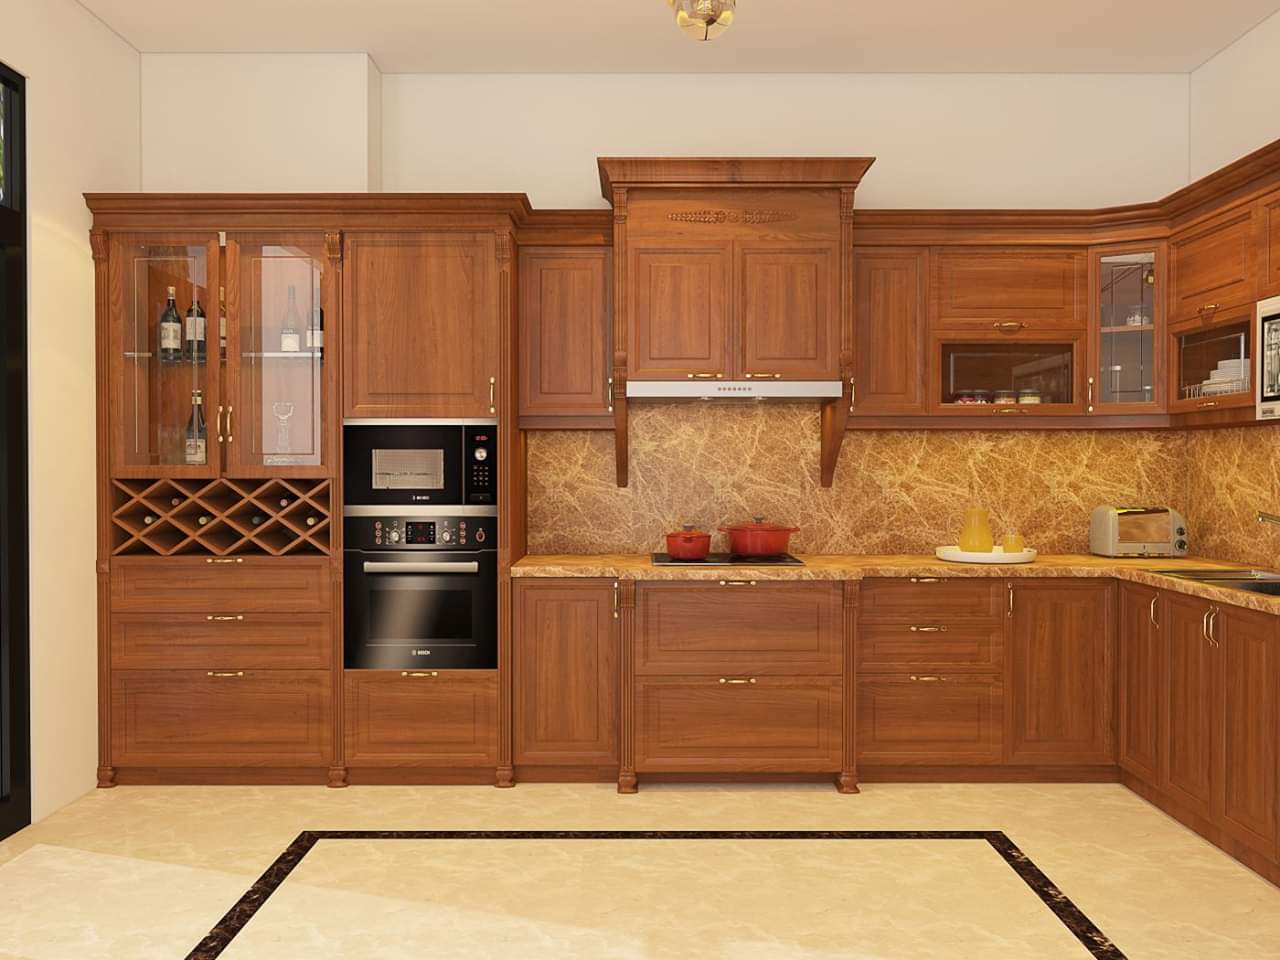 Với thiết kế sang trọng và tinh tế, mẫu tủ bếp gỗ đổi sẽ tạo nên một không gian bếp đẳng cấp, hiện đại và tiện nghi.